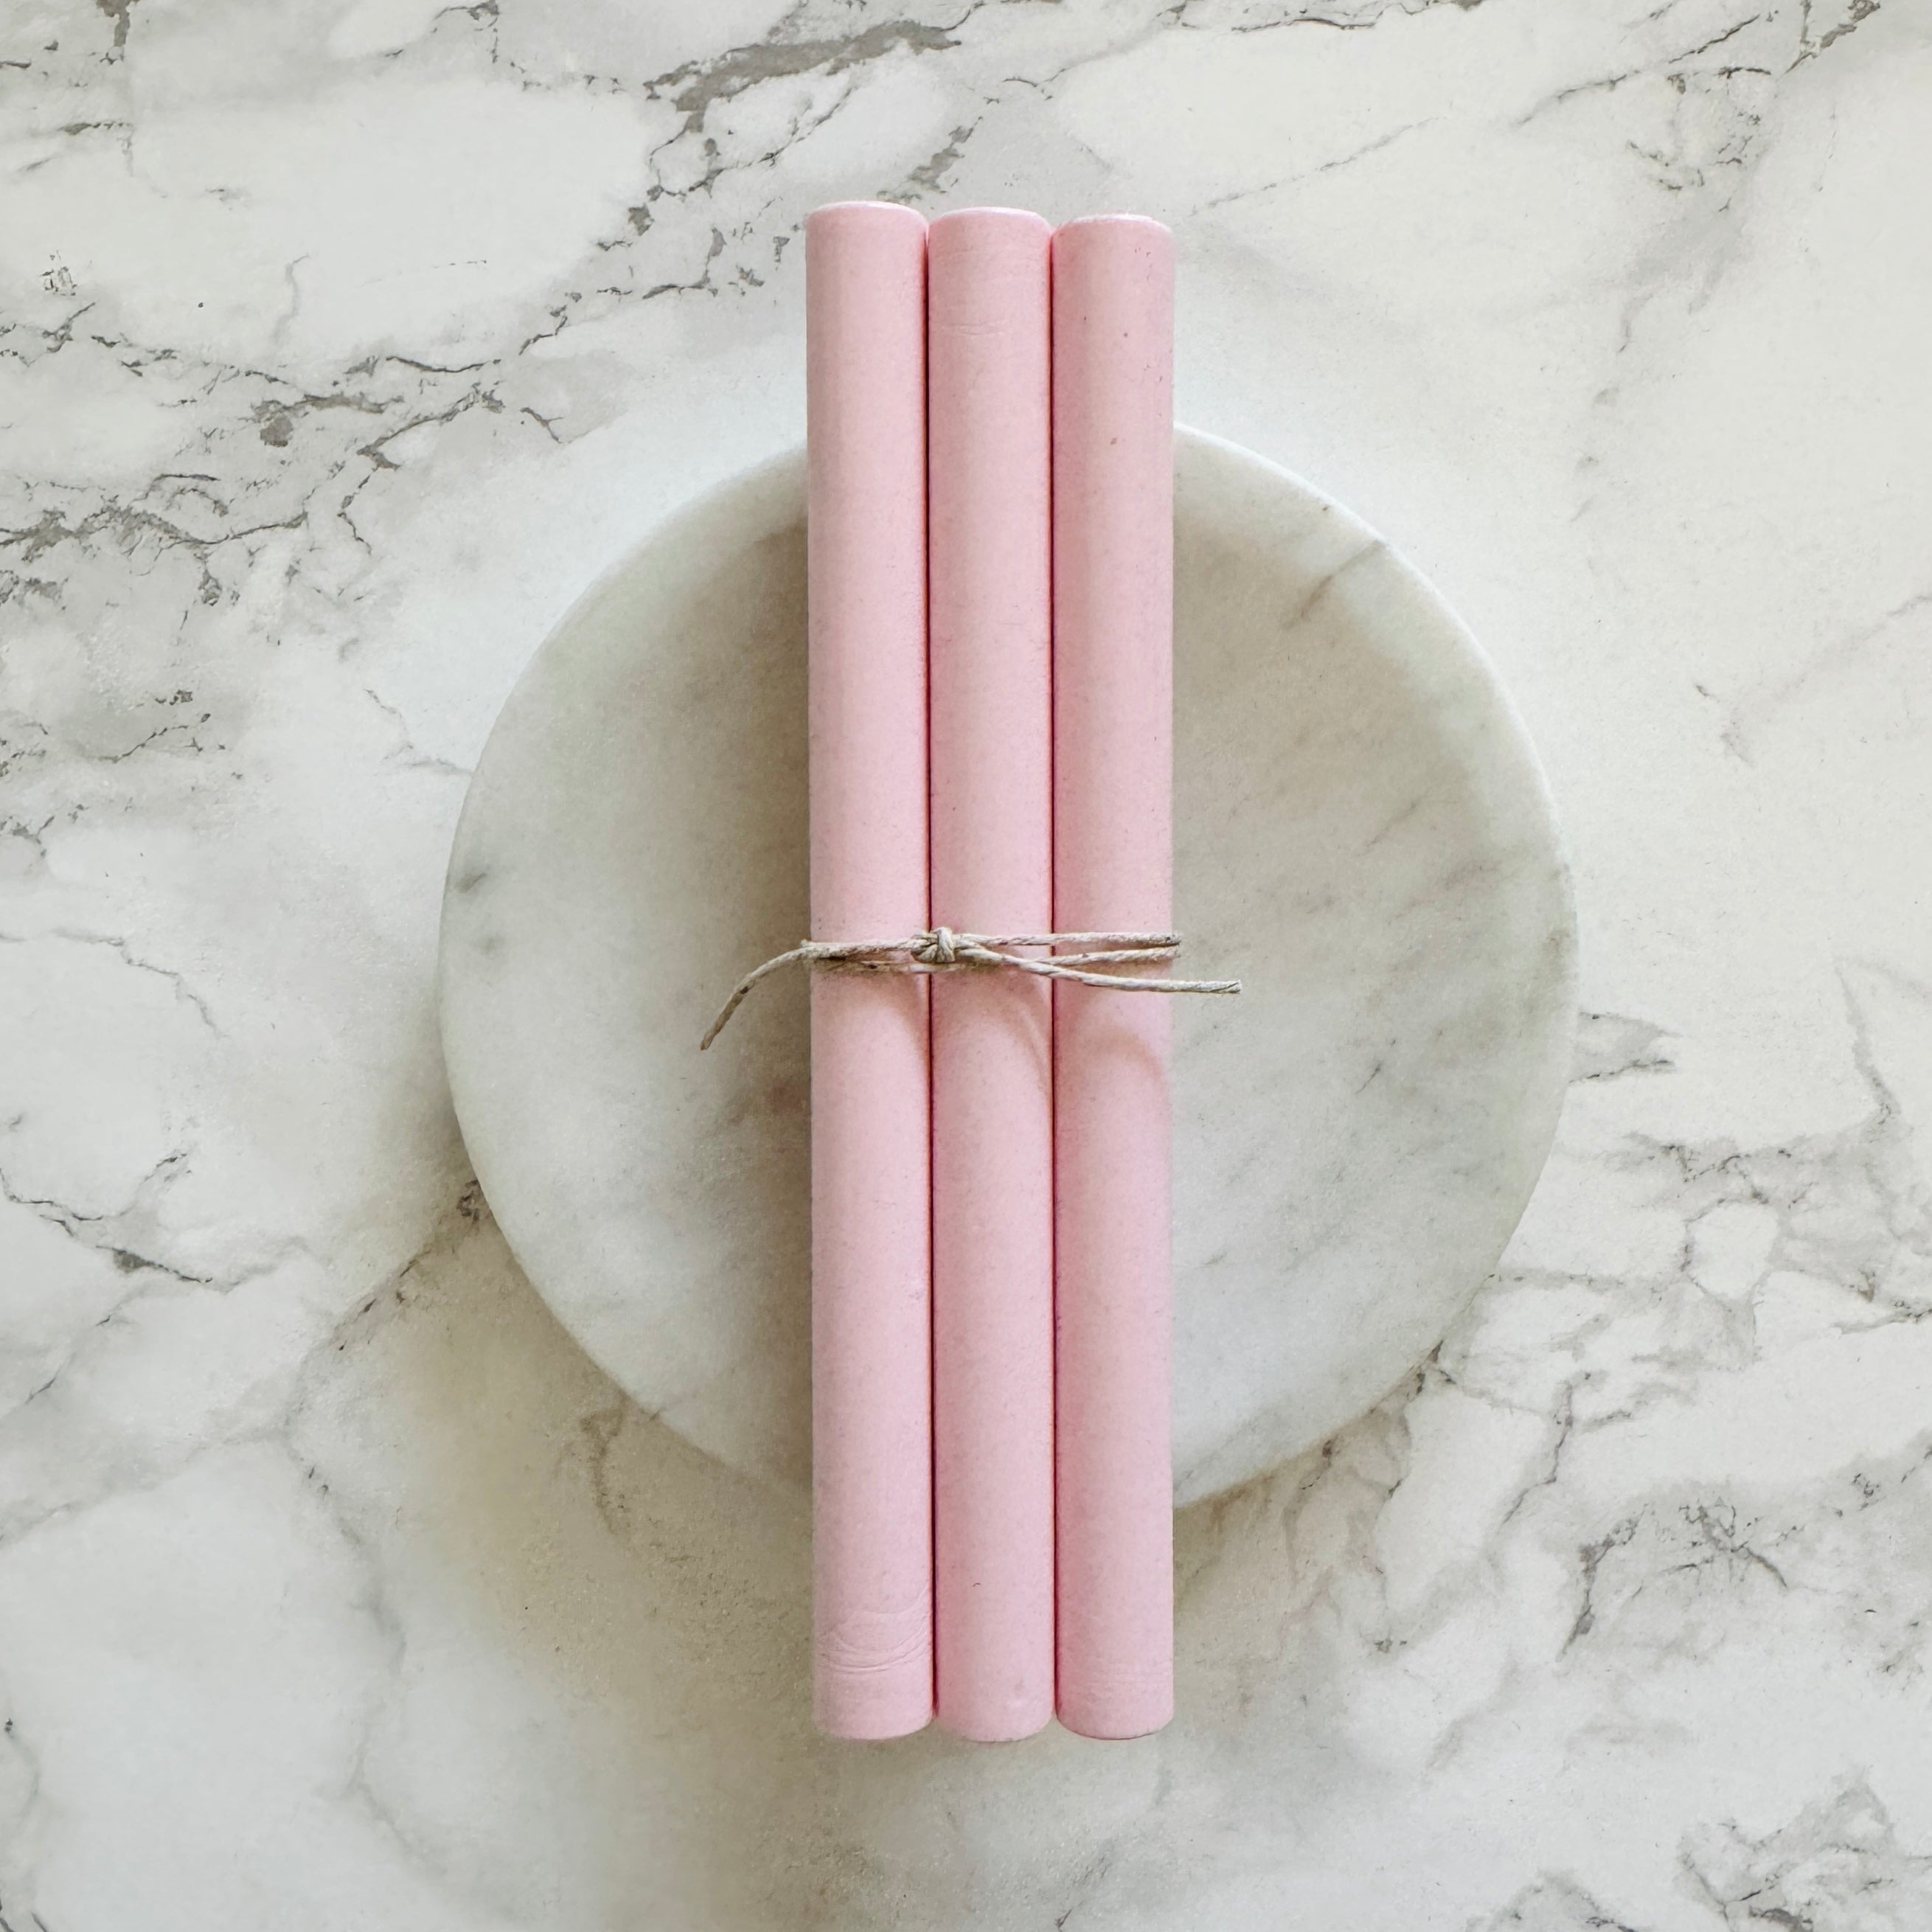 Bubble Gum Pink Sealing Wax Sticks